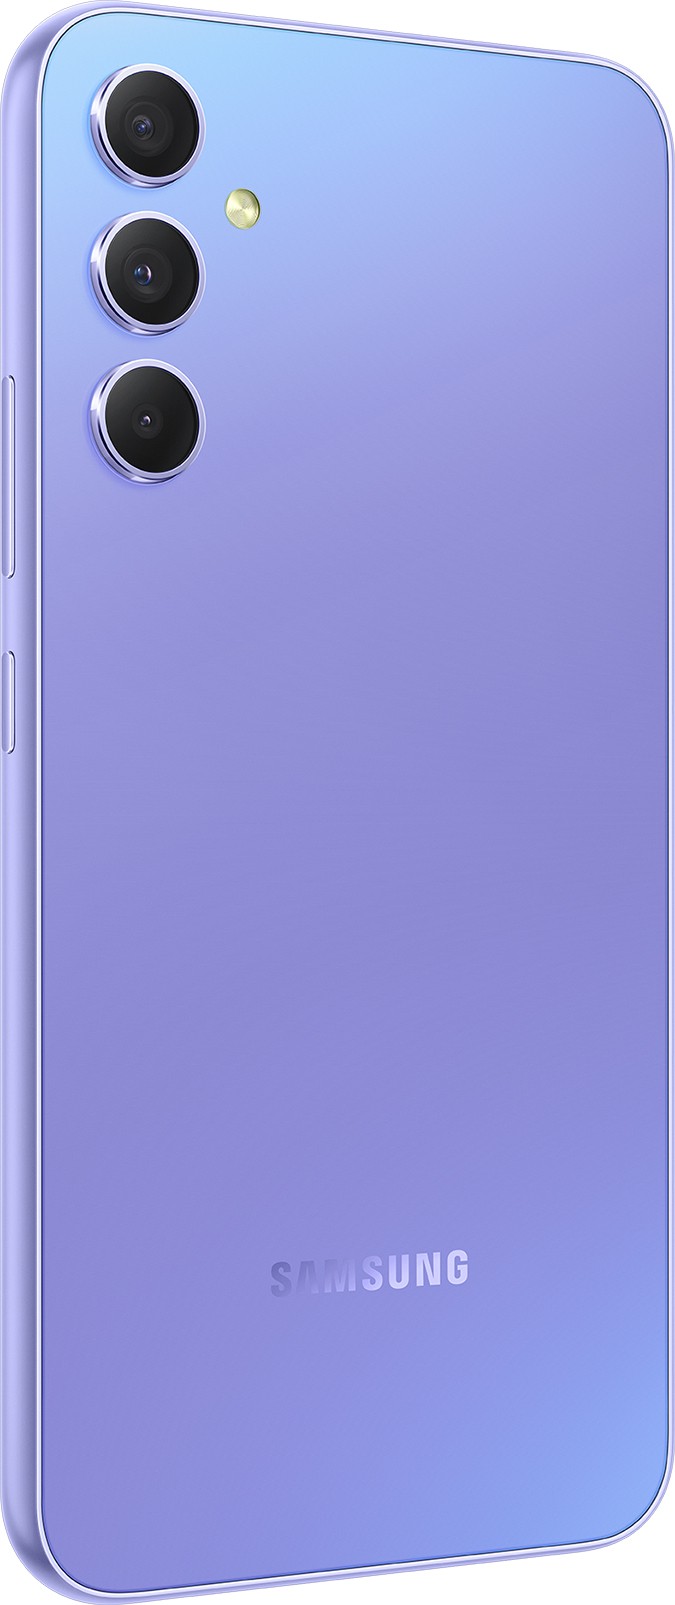 SAMSUNG Smartphone Galaxy A34 5G 128Go Lavande - GALAXY-A34-5G-128-VL